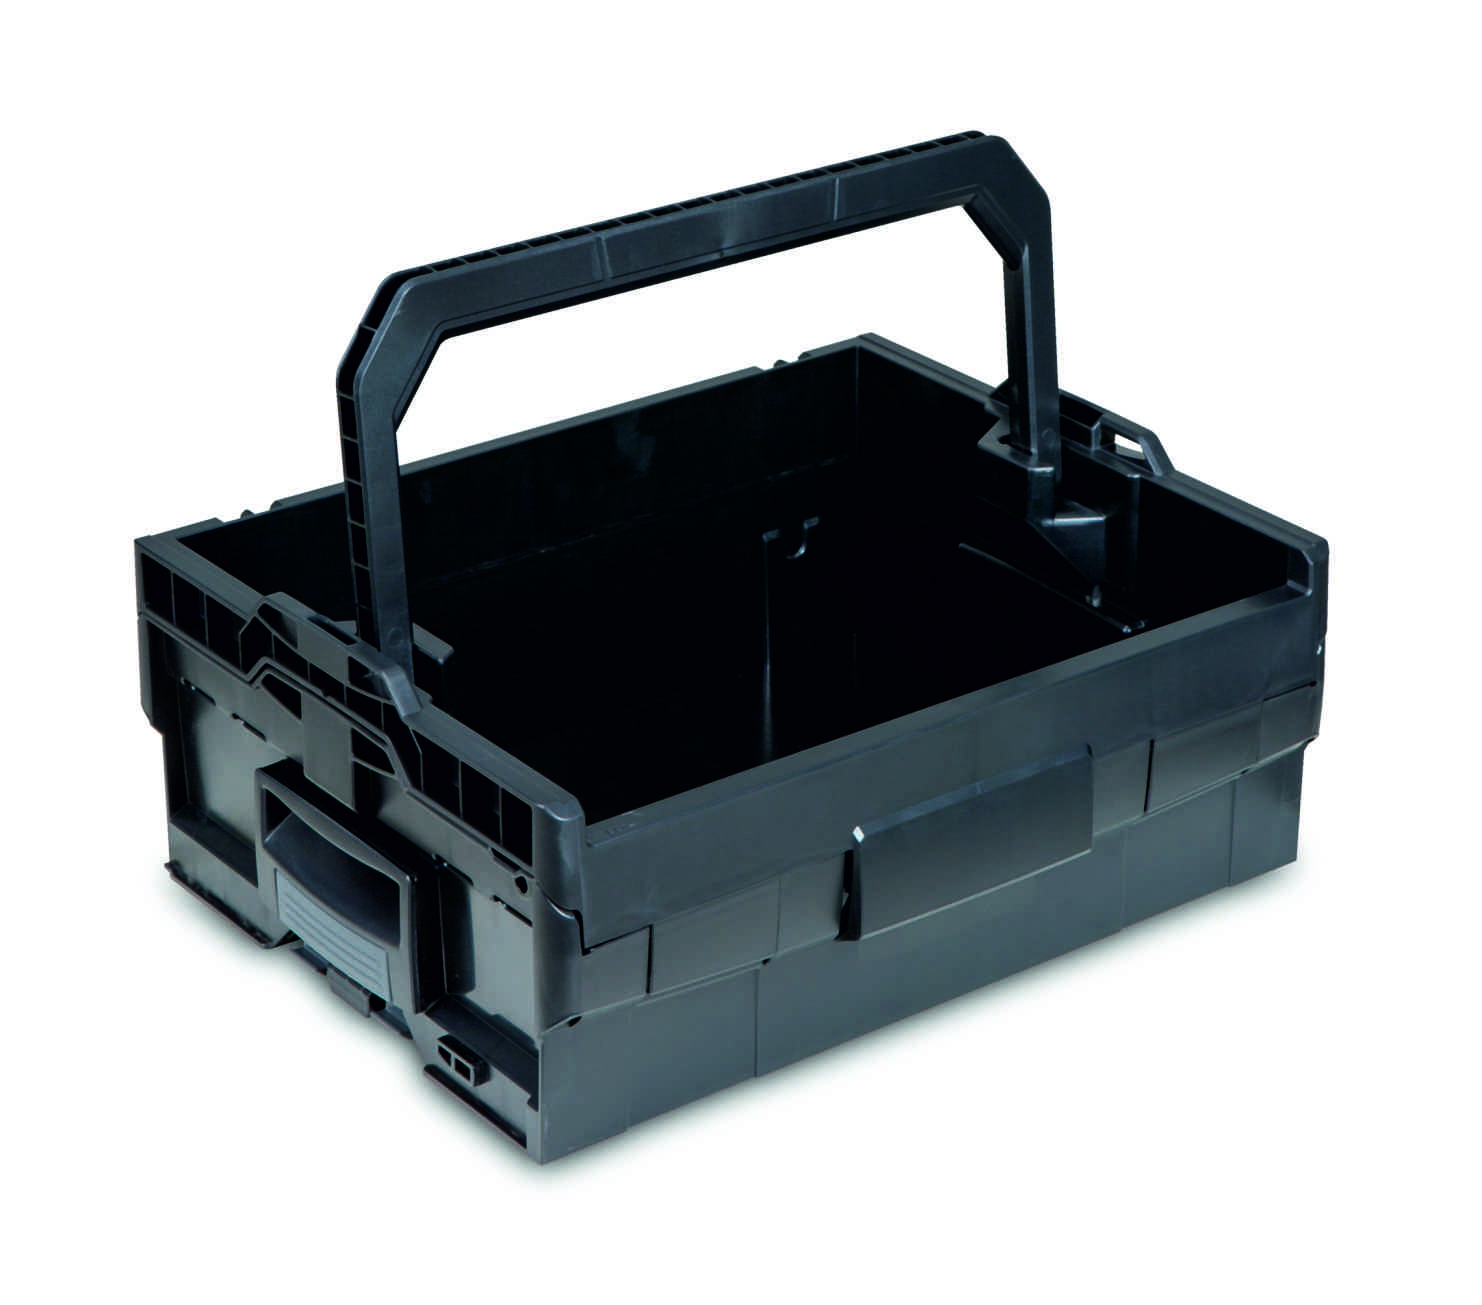 LT-BOXX 170 Werkzeugkiste mit invividueller Schaumstoffeinlage aus LD45 schwarz